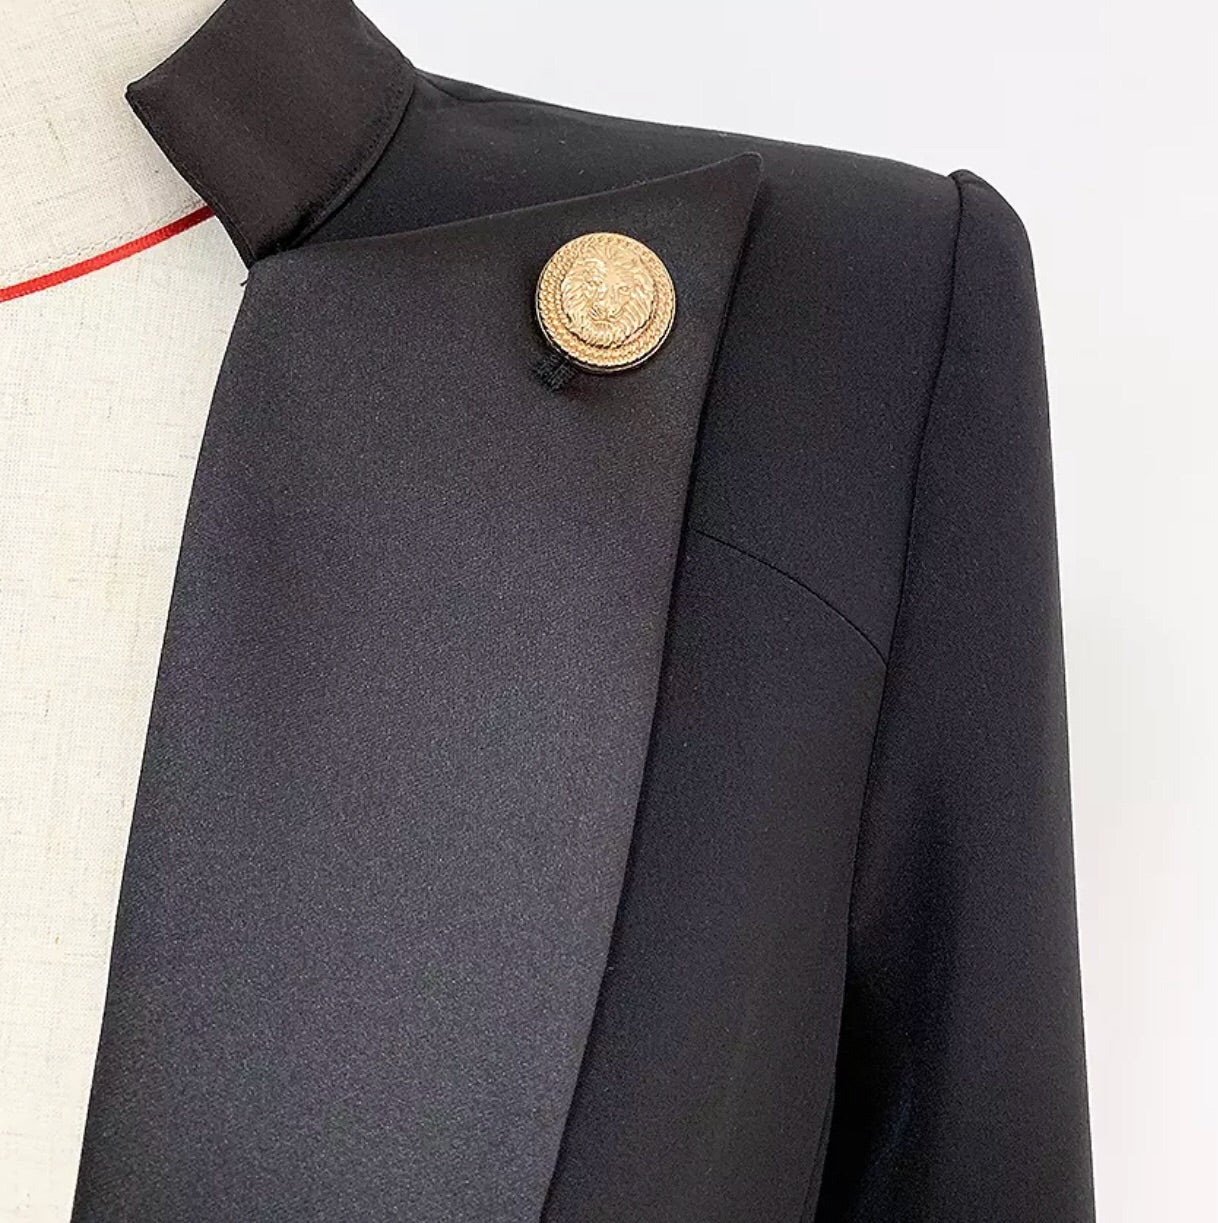 Collar Button Blazer - Black